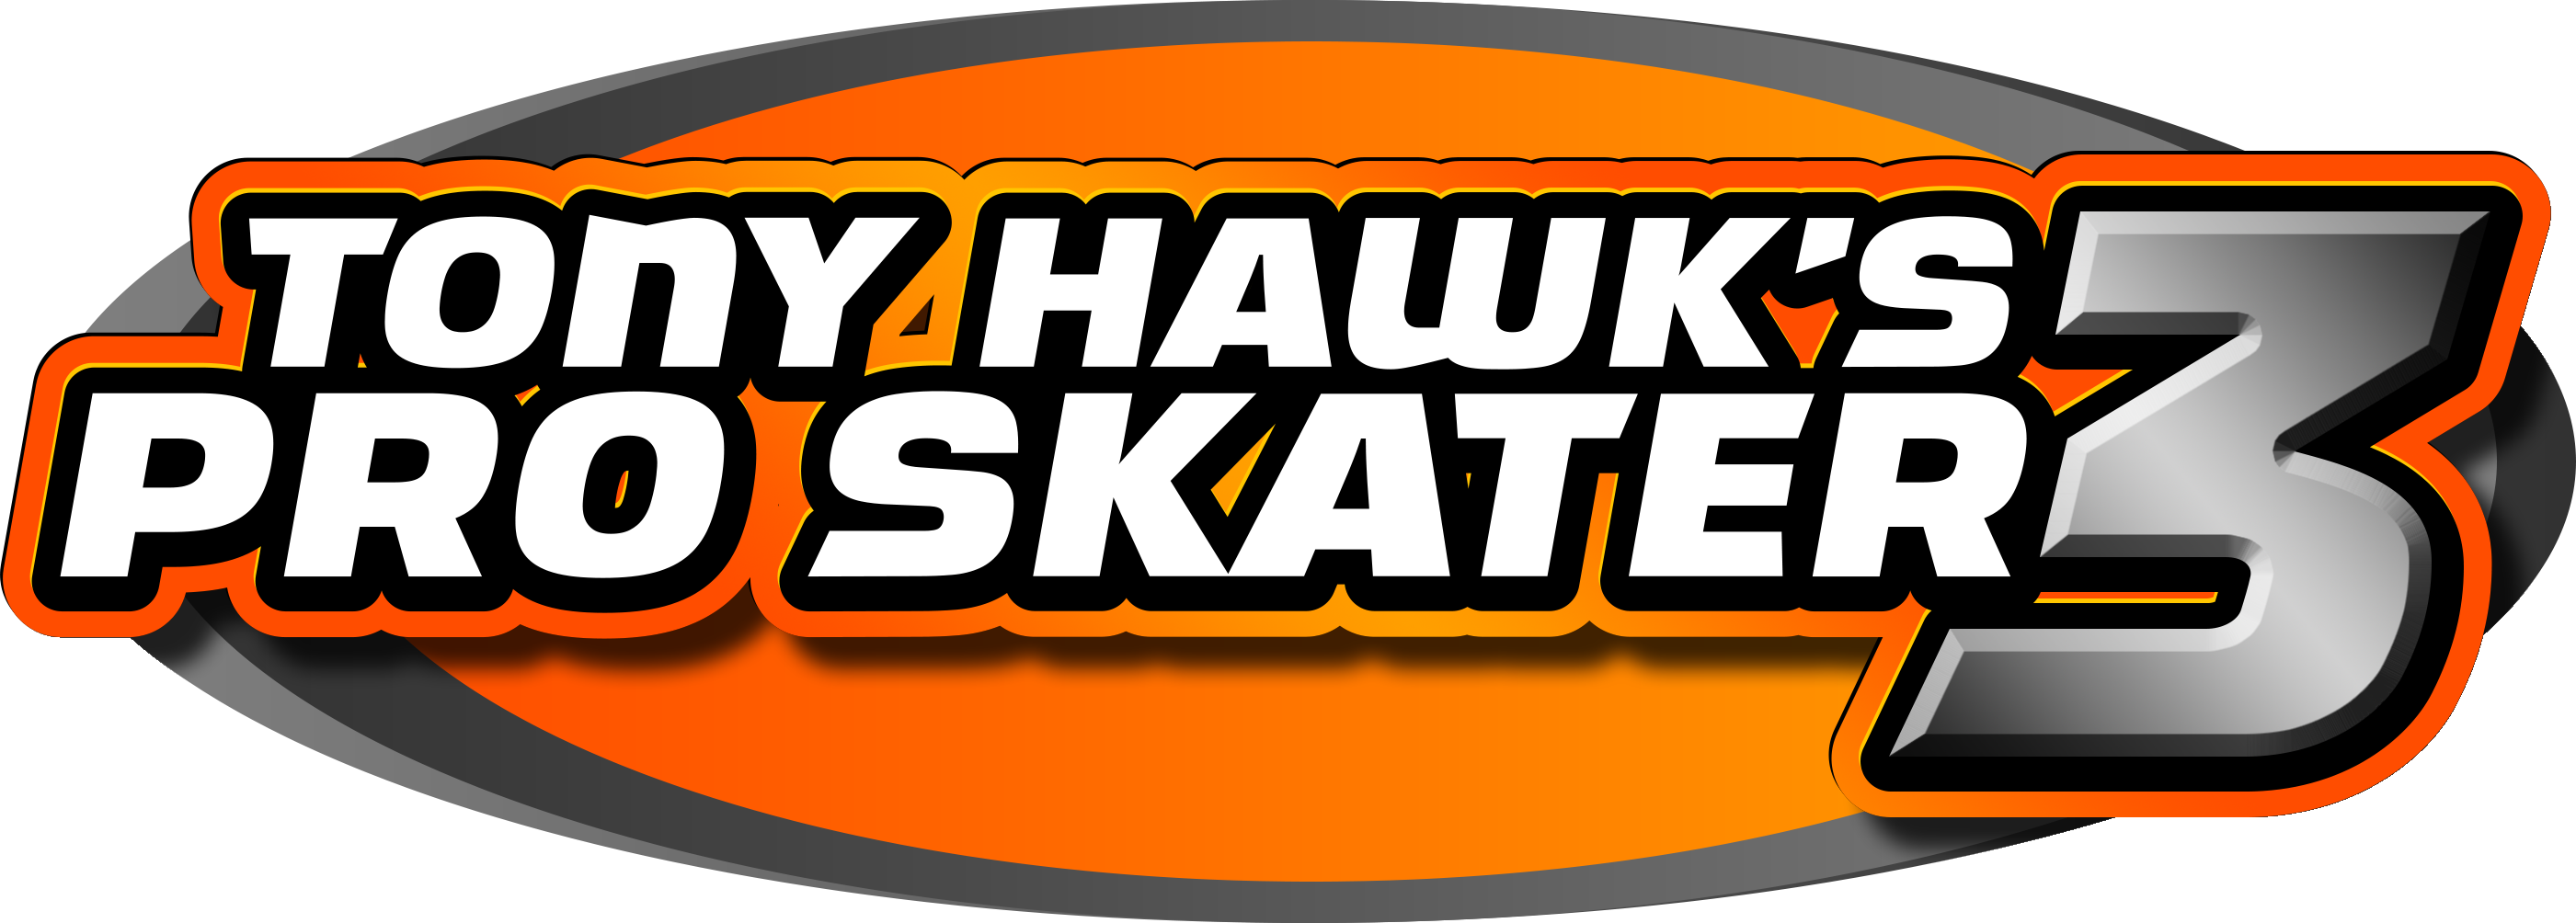 Tony Hawk Pro Skater 3 Apk Download